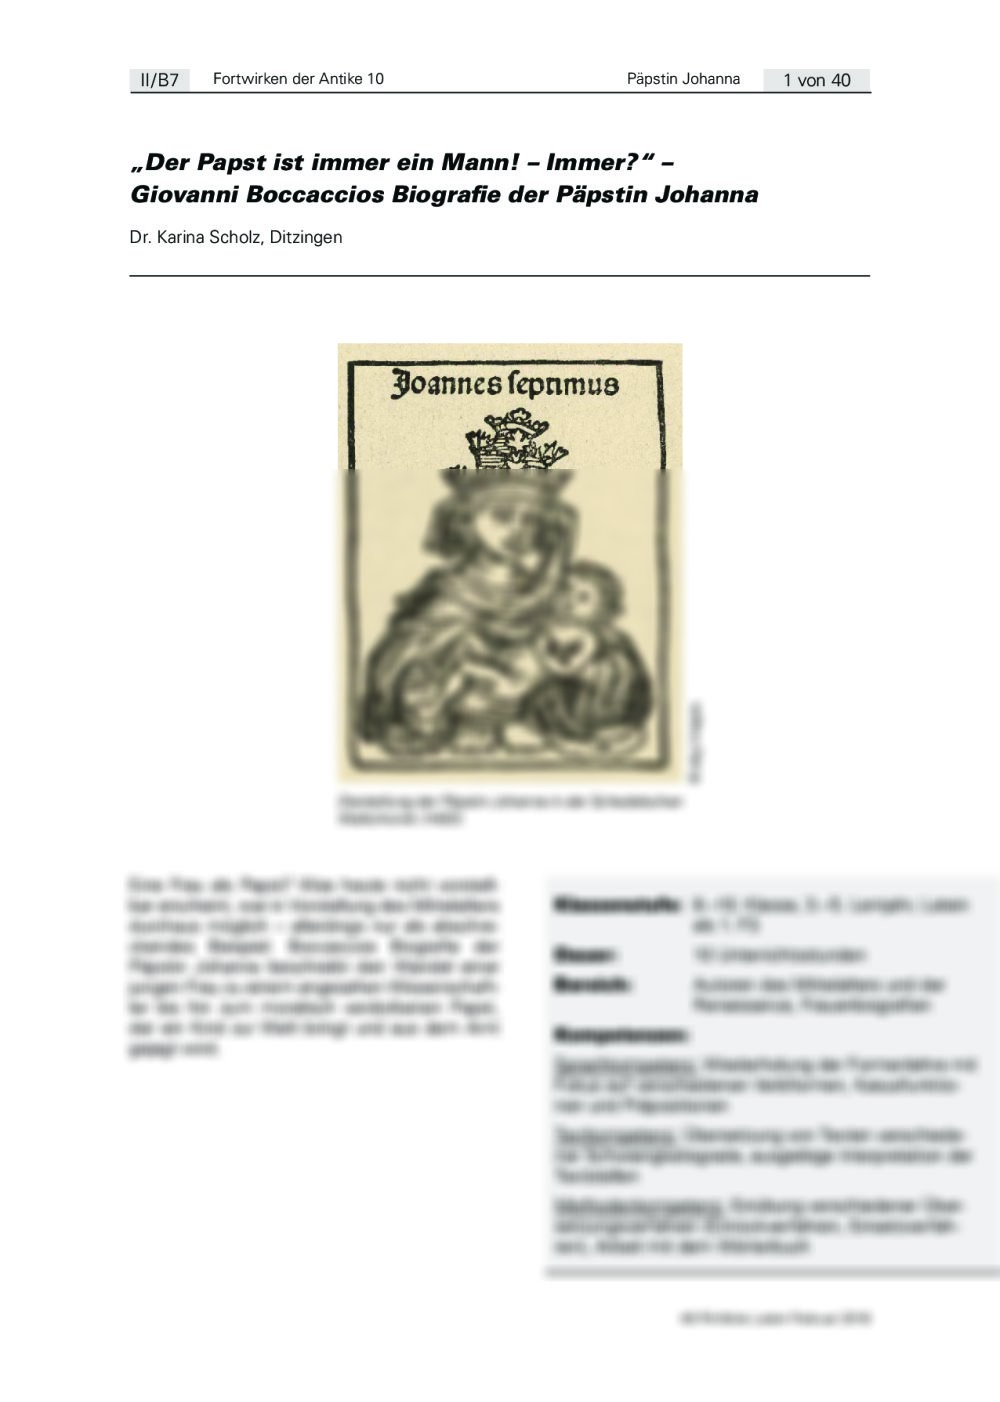 Giovanni Boccaccios Biografie der Päpstin Johanna - Seite 1